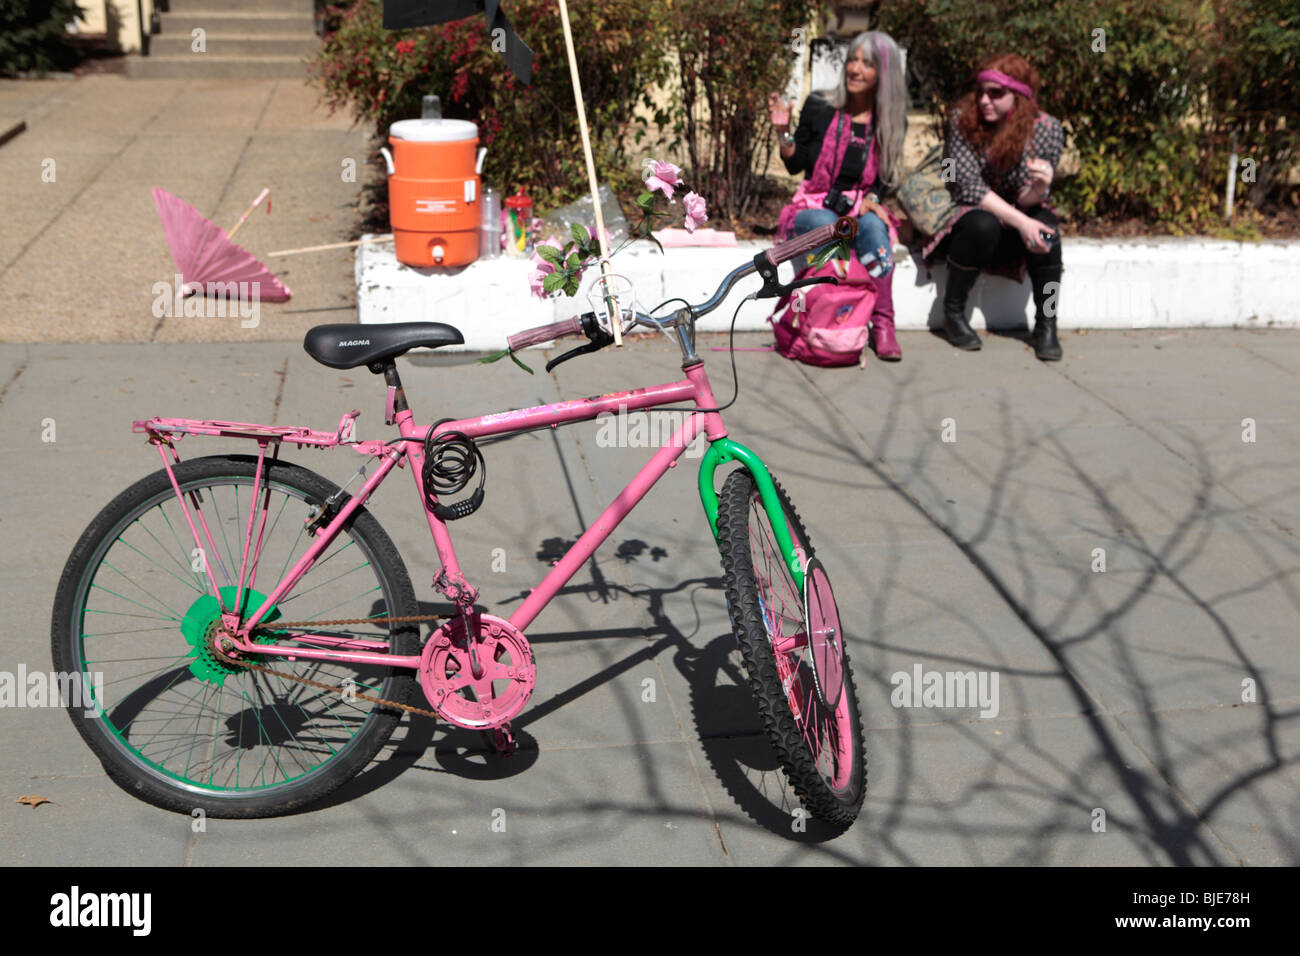 Un vélo rose garée près de Code Pink militants. Manifestation anti-guerre. Marche sur Washington. 20 mars, 2010 Banque D'Images